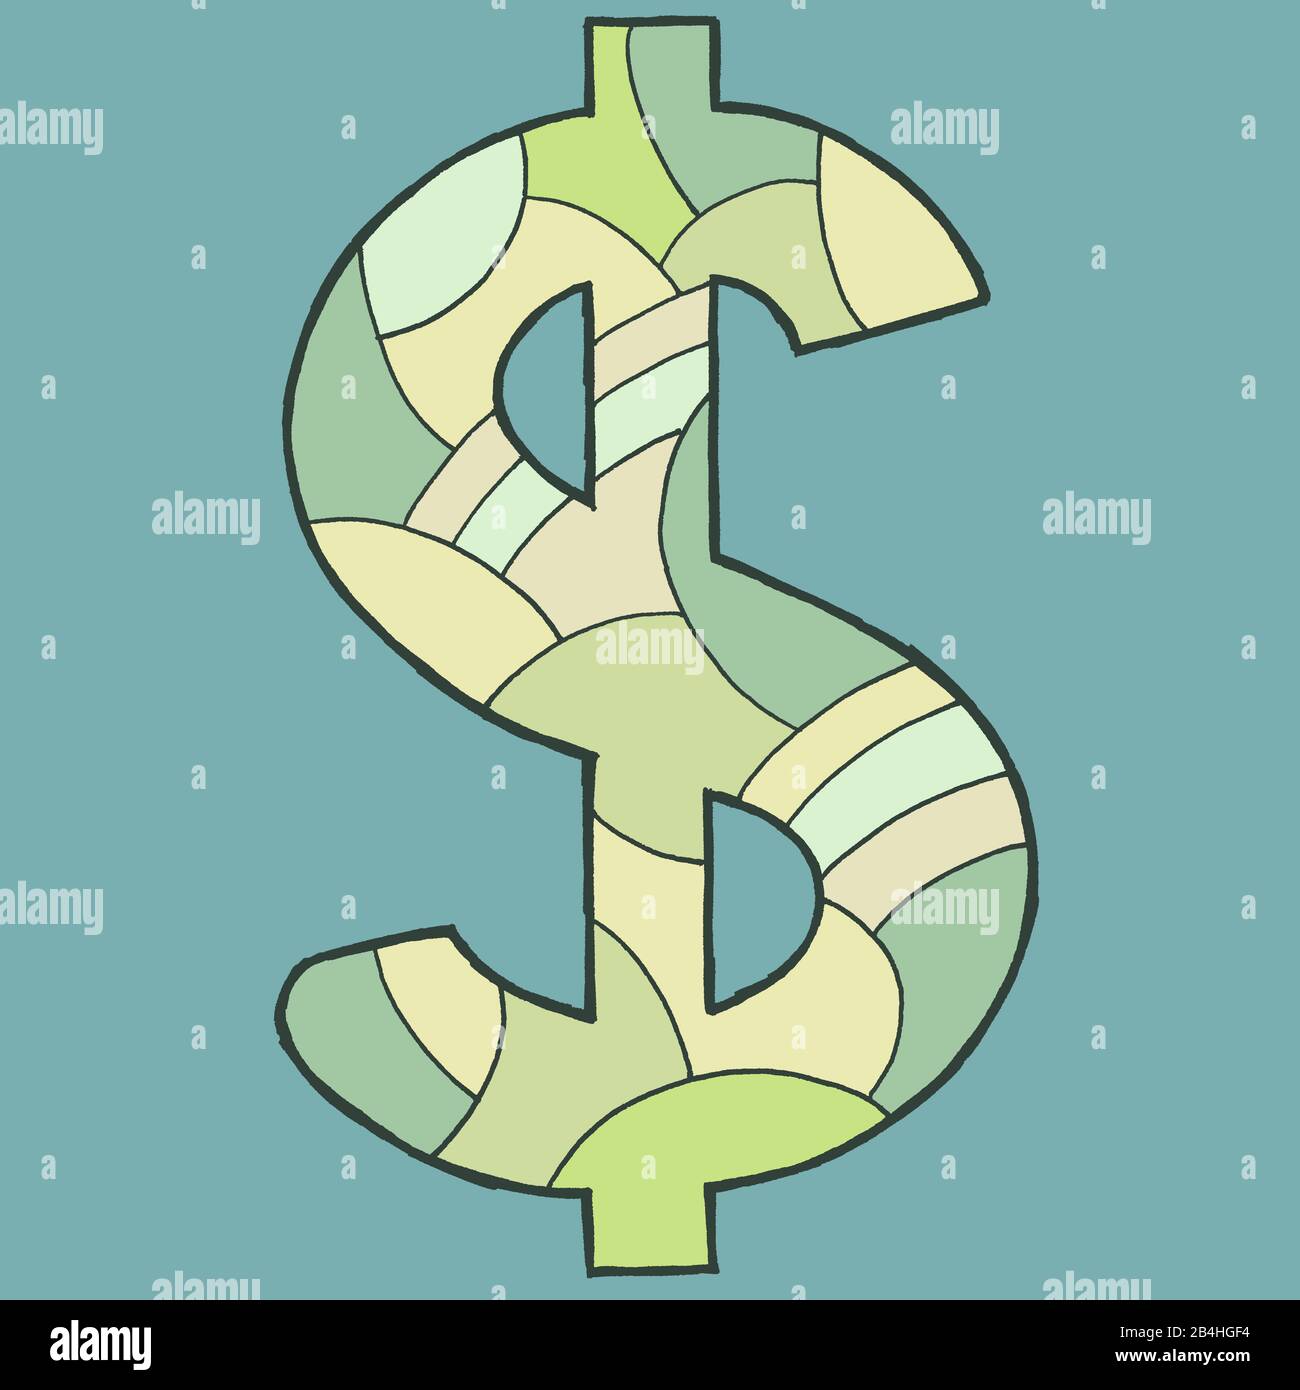 Dollarzeichen, gezeichnet als Vektorillustration, in grünlichen Farbtönen auf bläulich-grauem Hintergrund in Pop-Art-Stilistik Stock Photo